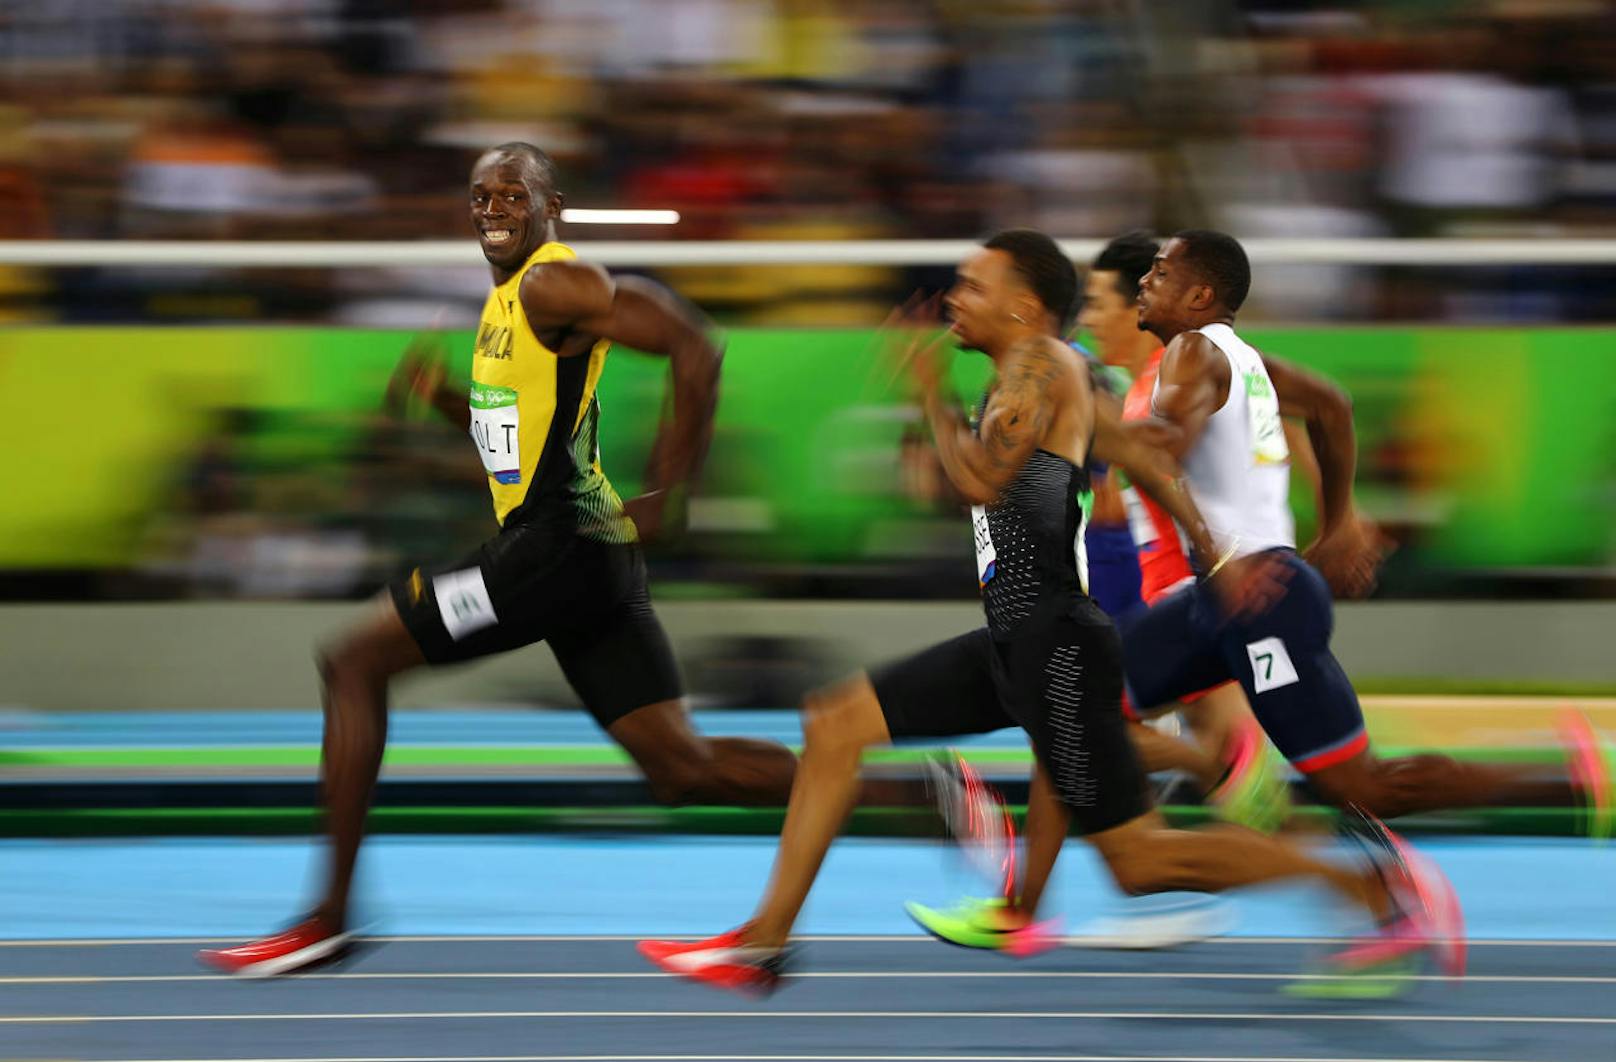 <b>Sport ? Dritter Preis, Einzelbilder</b>
Kai Oliver Pfaffenbach, Reuters
Titel: Rios goldenes Lächeln
Der Jamaikaner Usain Bolt schaut sich lächelnd um bei seinem Sieg im Halbfinale der 100 Meter bei der Sommer-Olympiade in Rio de Janeiro, Brasilien, am 14. August 2016. Das Rennen beendete er in 9,86 Sekunden, im Finale holte er Gold. Als erster Sportler errang er damit auf der 100-Meter-Strecke drei Olympiatitel in Folge.